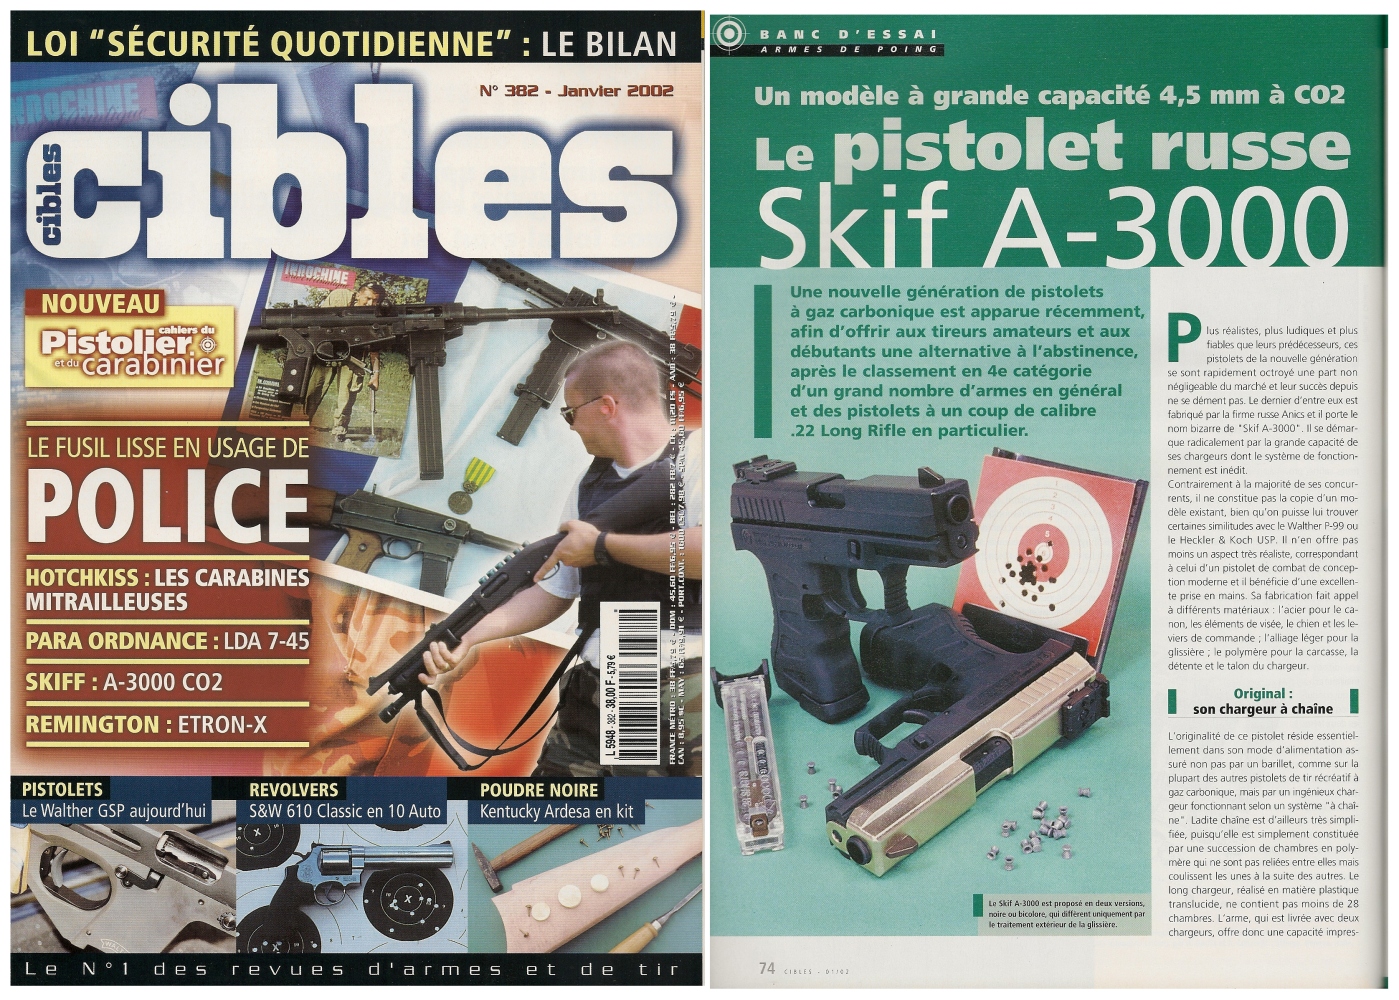 Le banc d’essai du pistolet à Co2 SKIF A-3000 a été publié sur 3 pages ½ dans le magazine Cibles n°382 (janvier 2002)